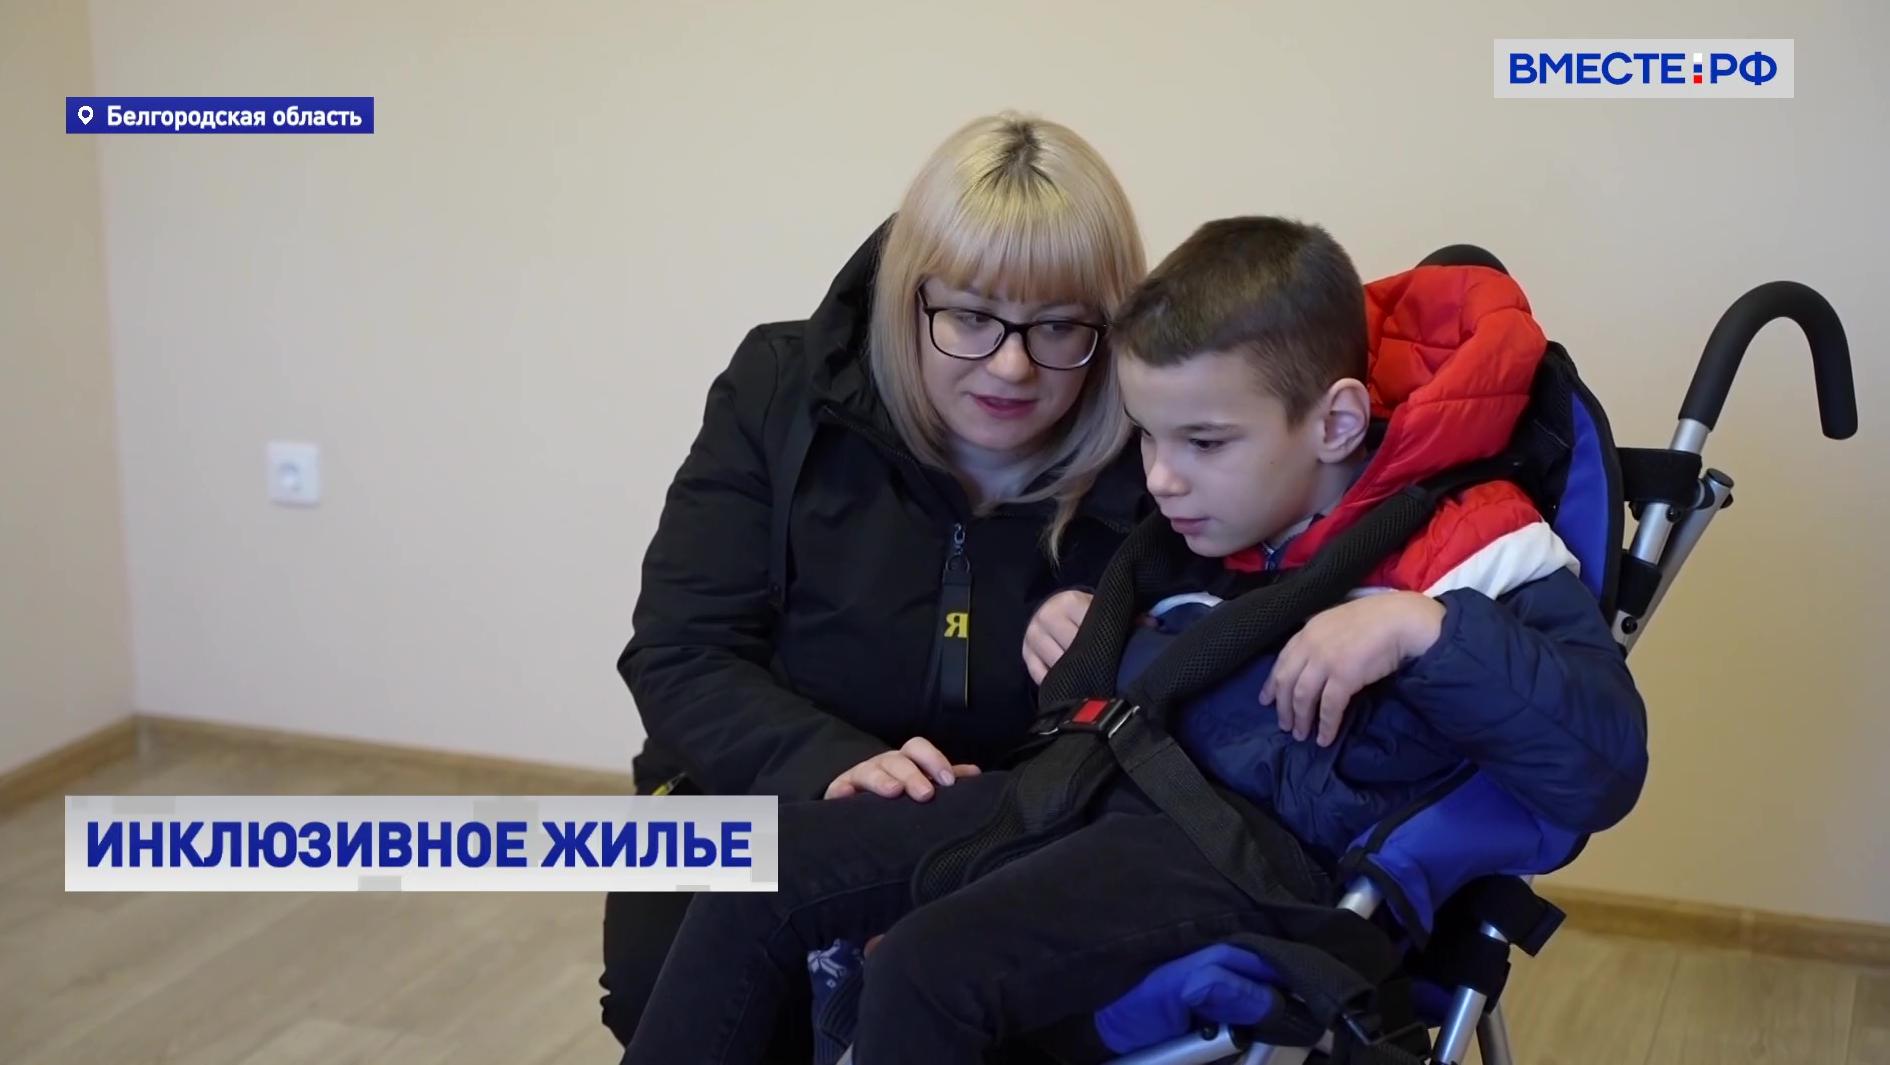 Несколько семей с детьми-инвалидами получили ключи от нового жилья в Белгородской области